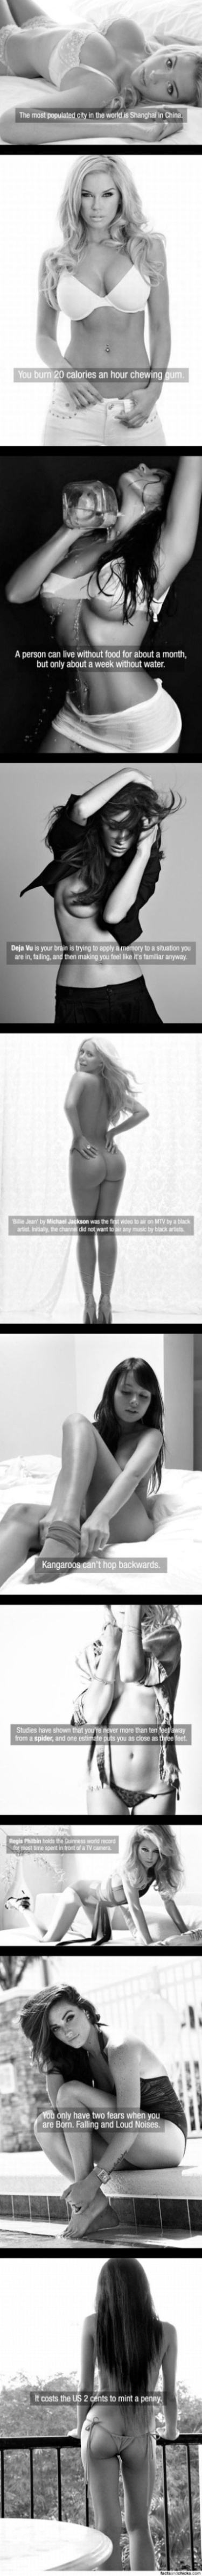 Obrázek Facts Fix On Hot Chicks 06-01-2012